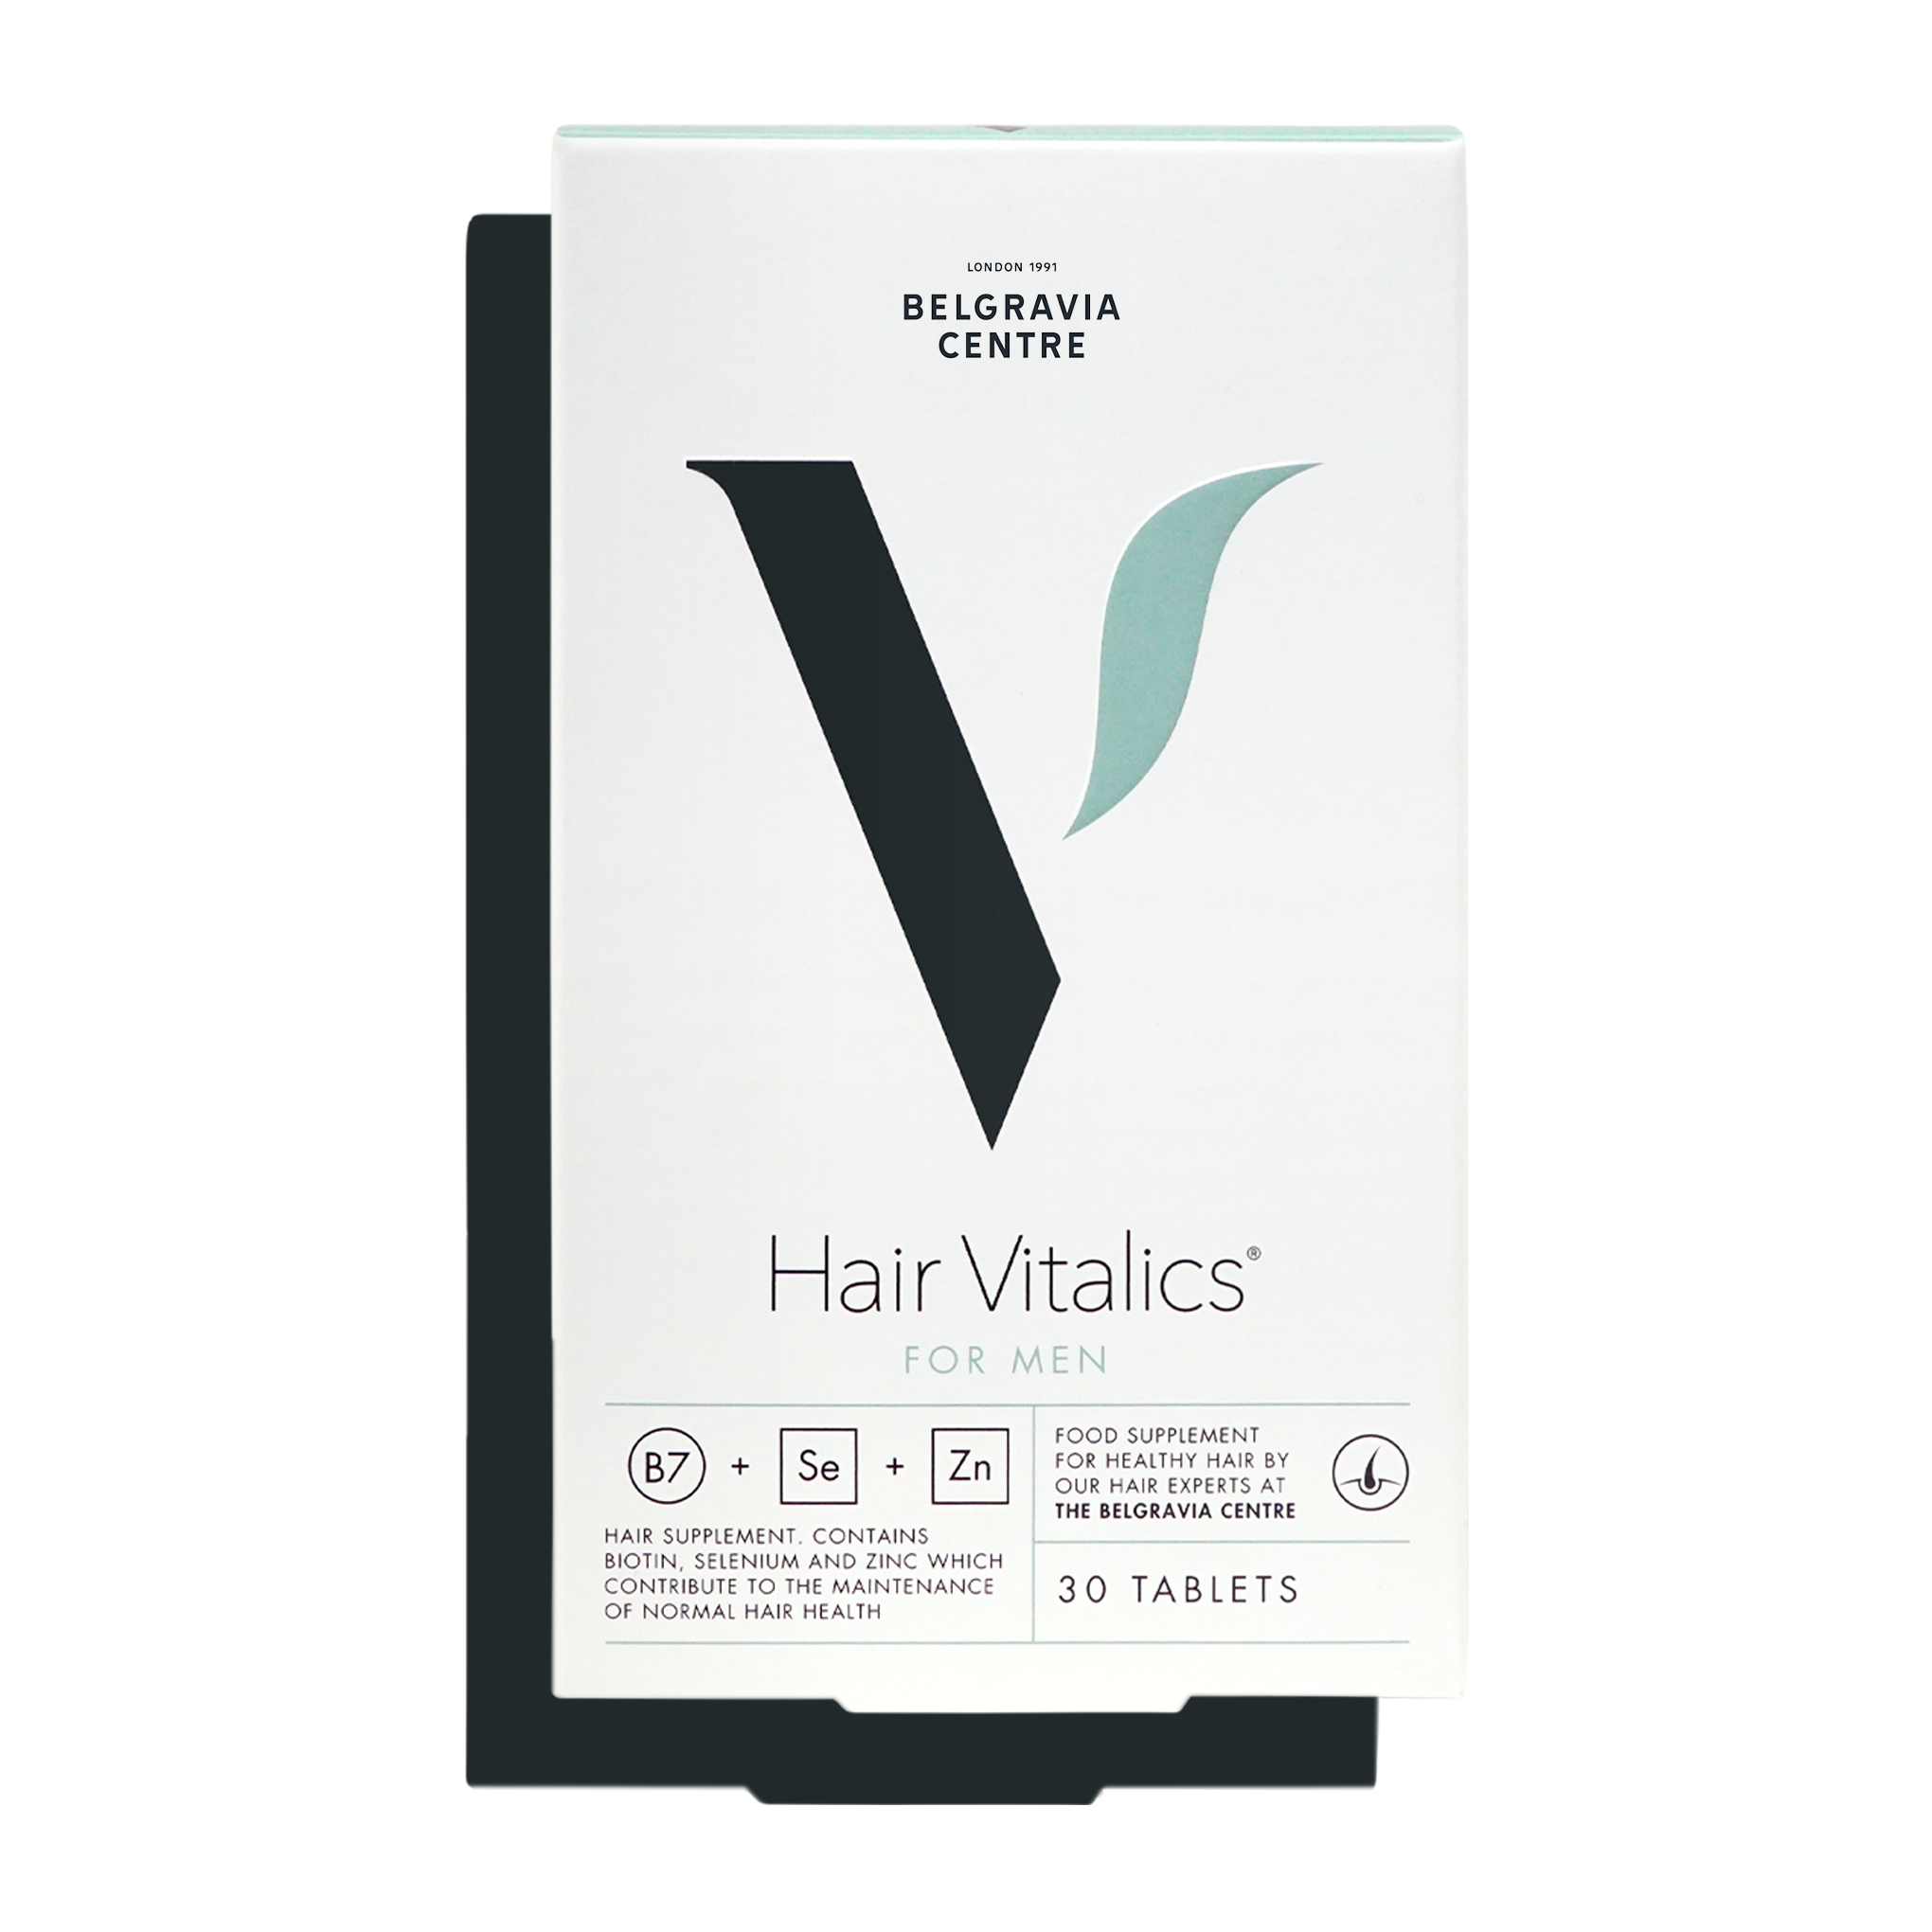 Hair Vitalics for Men